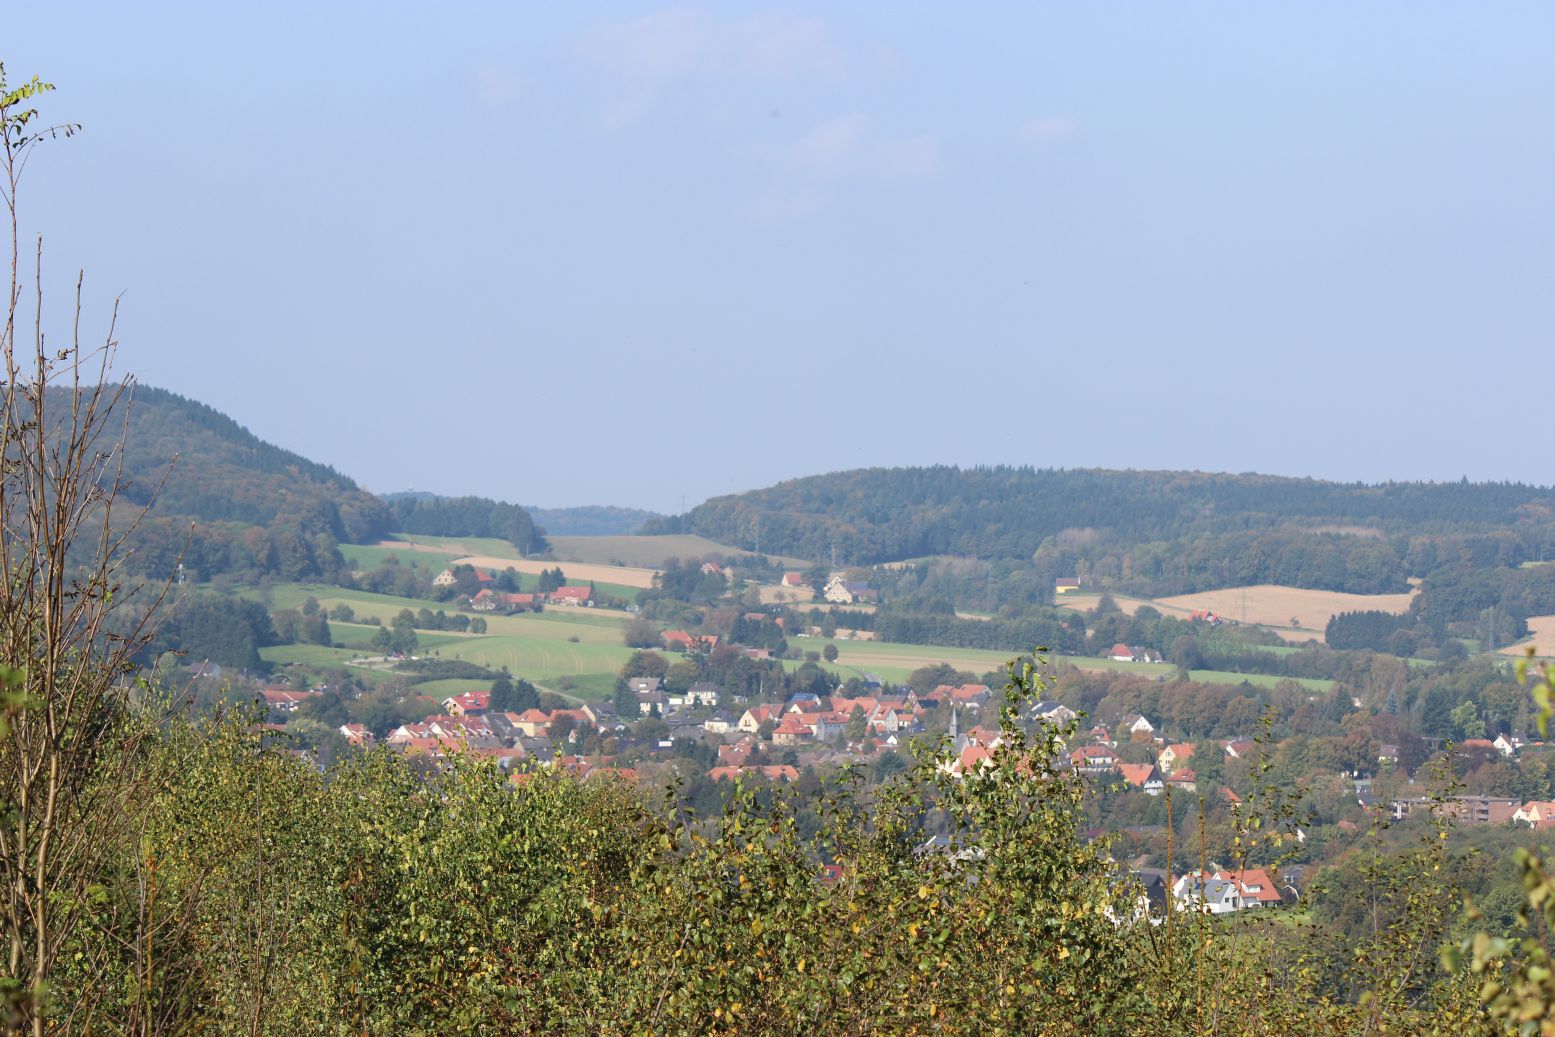 Ravensberg